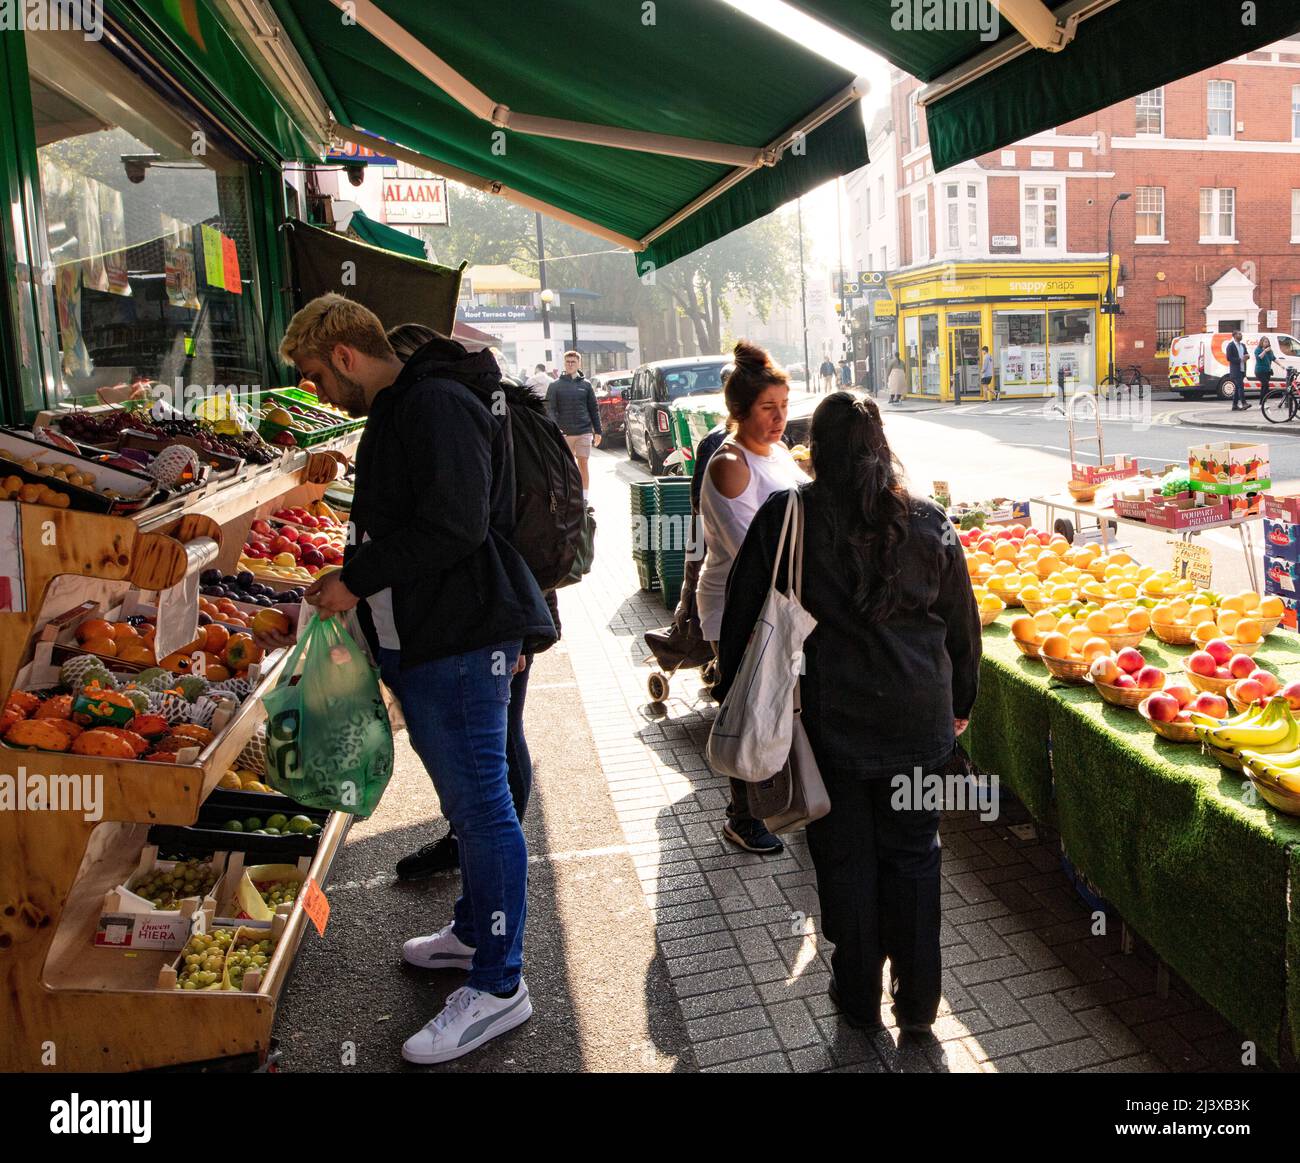 Obst- und Gemüsestände mit Canvas-Baldachin im Zentrum Londons am schönen Frühlingstag, an dem die Menschen die Produkte betrachten Stockfoto